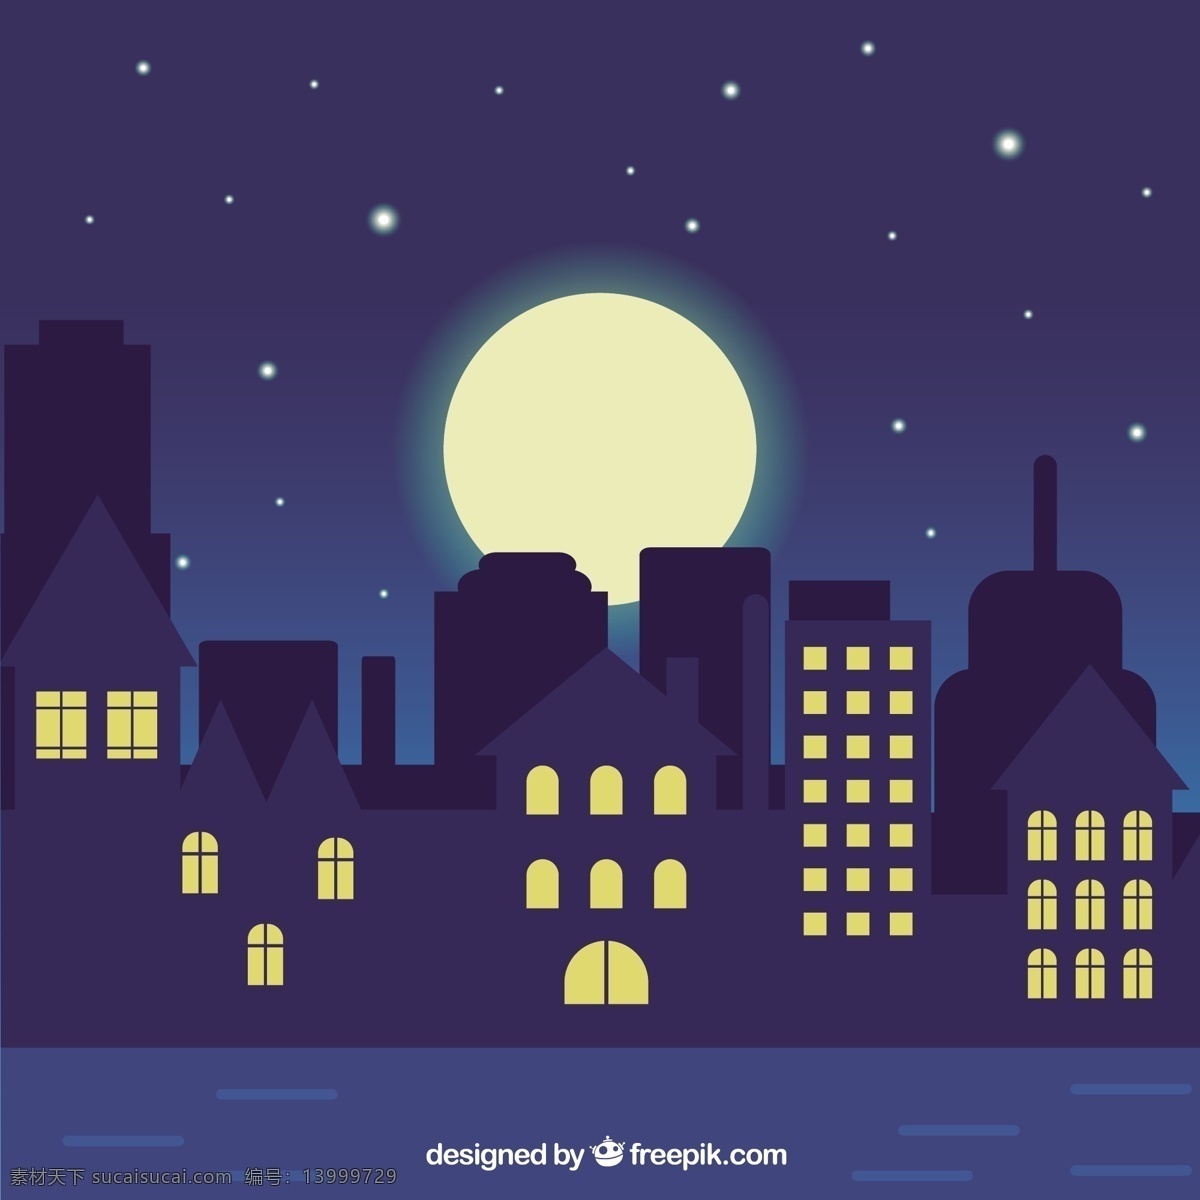 夜间 城市 插图 房子 建筑 道路 平面 月亮 夜晚 灯光 窗户 城市建筑 城市剪影 剪影 摩天大楼 蓝色